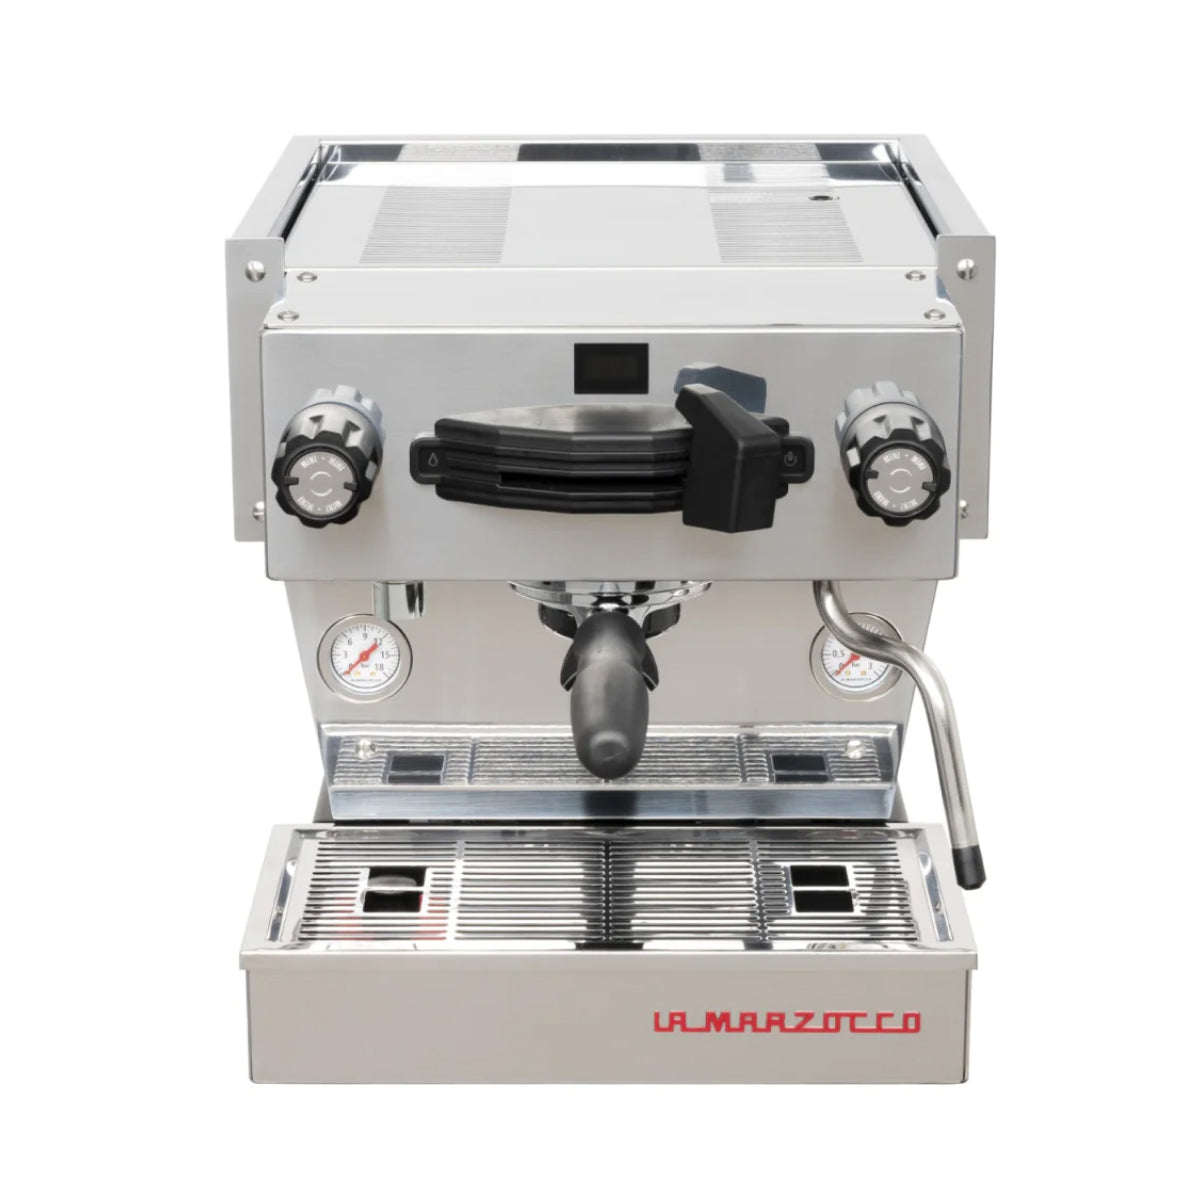 La Marzocco Linea Mini R Espresso Machine